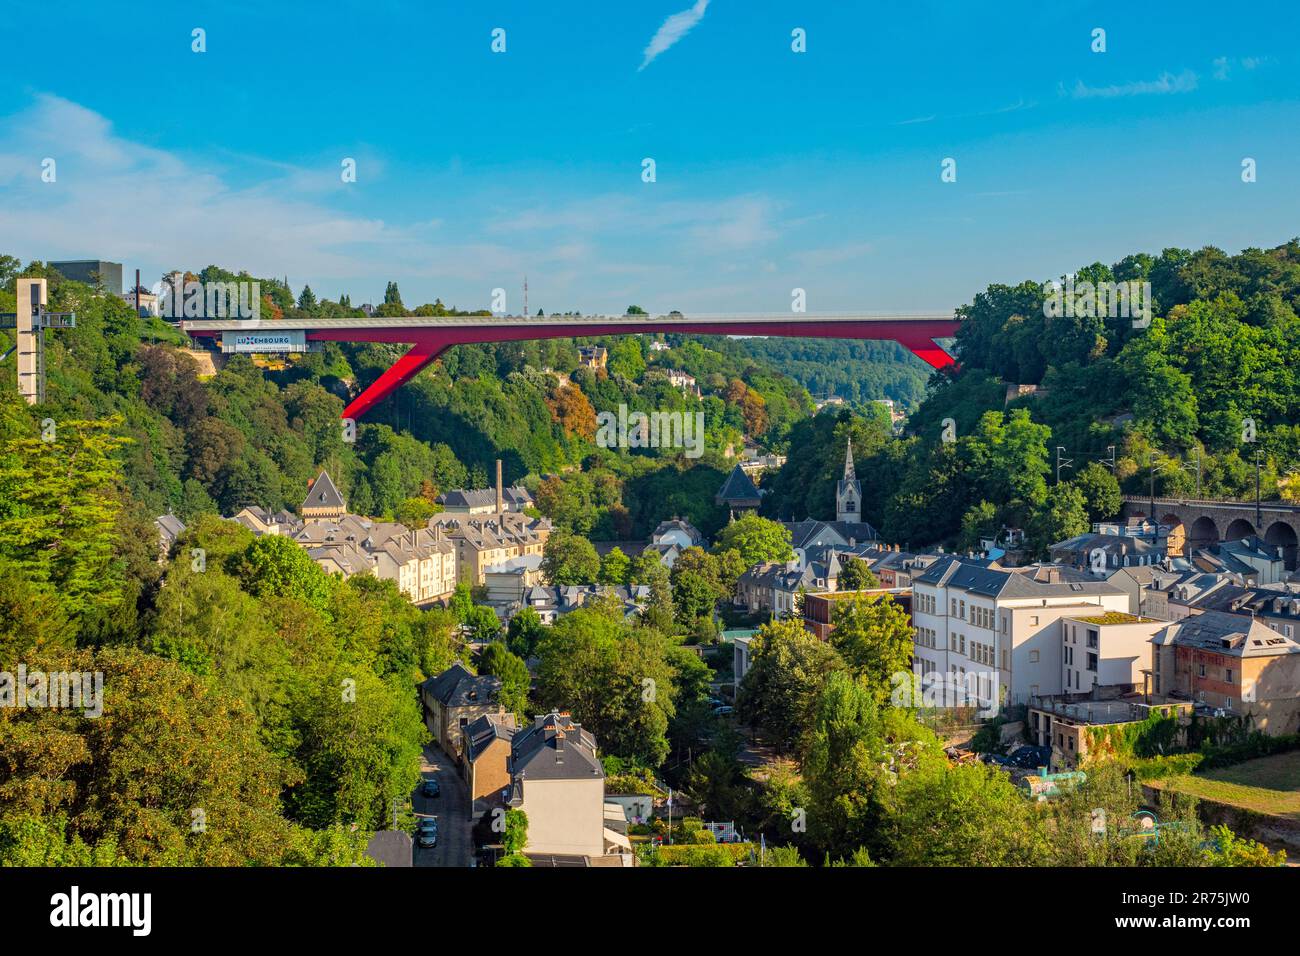 Pfaffenthal und Großherzogin Charlotte Bridge, Luxemburg-Stadt, Benelux, Benelux-Länder, Luxemburg Stockfoto